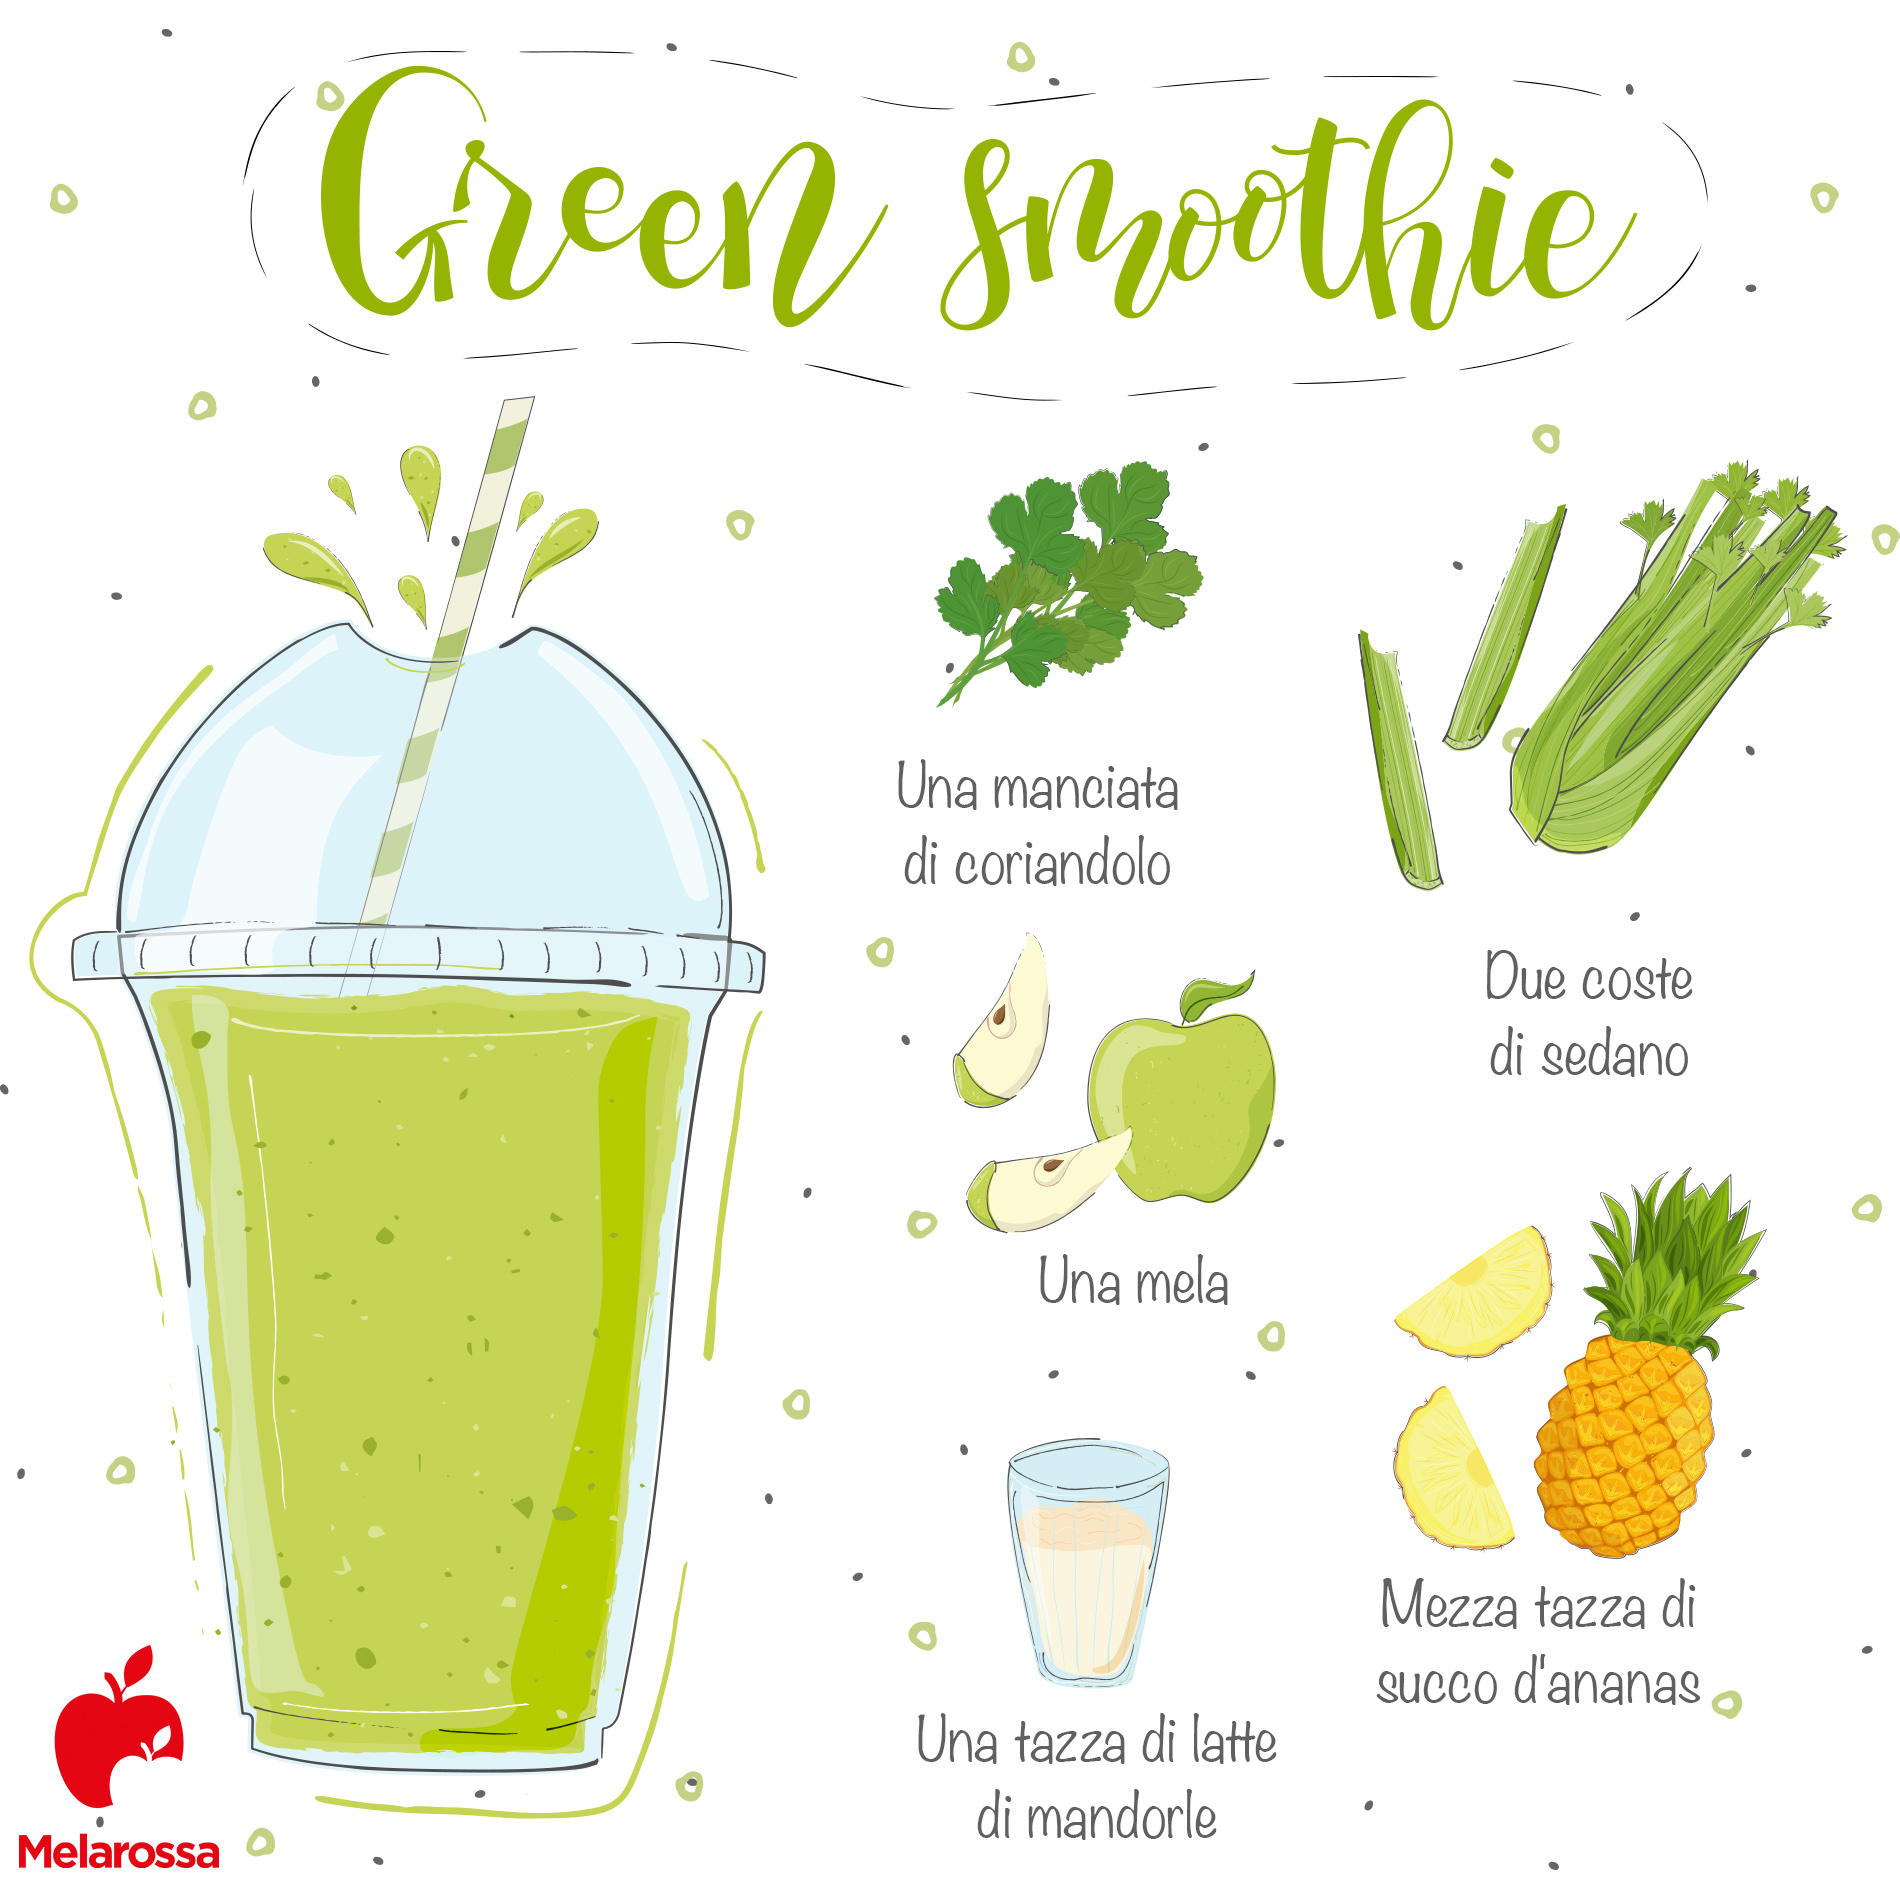 preparare uno smoothie: la ricetta del green smoothie